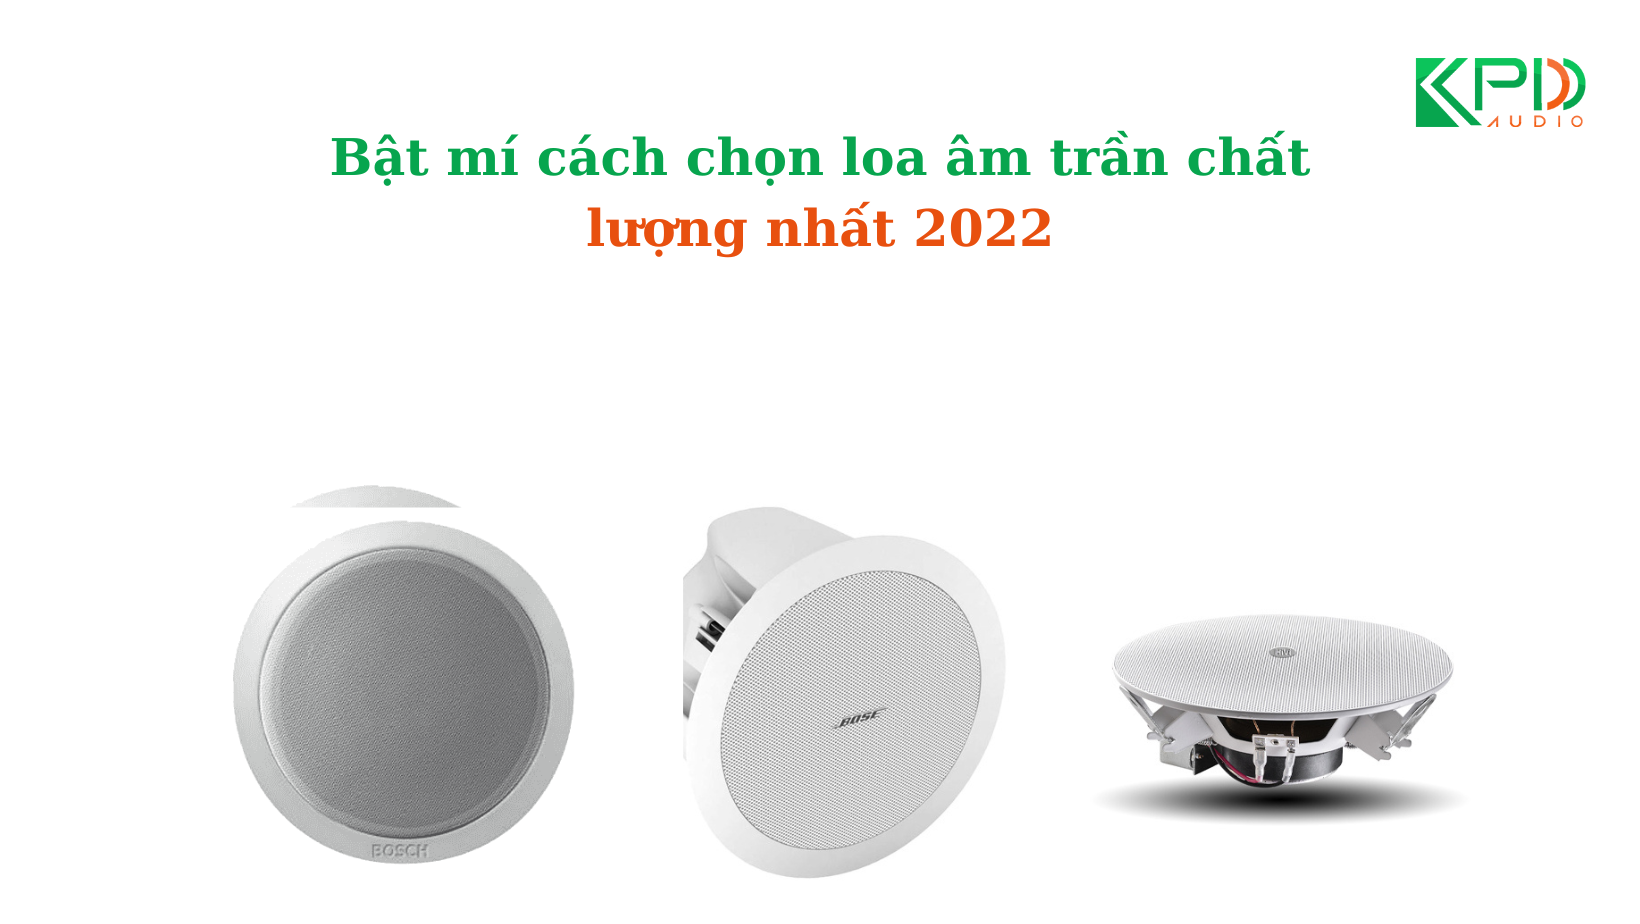 Chon-loa-am-tran-chat-luong